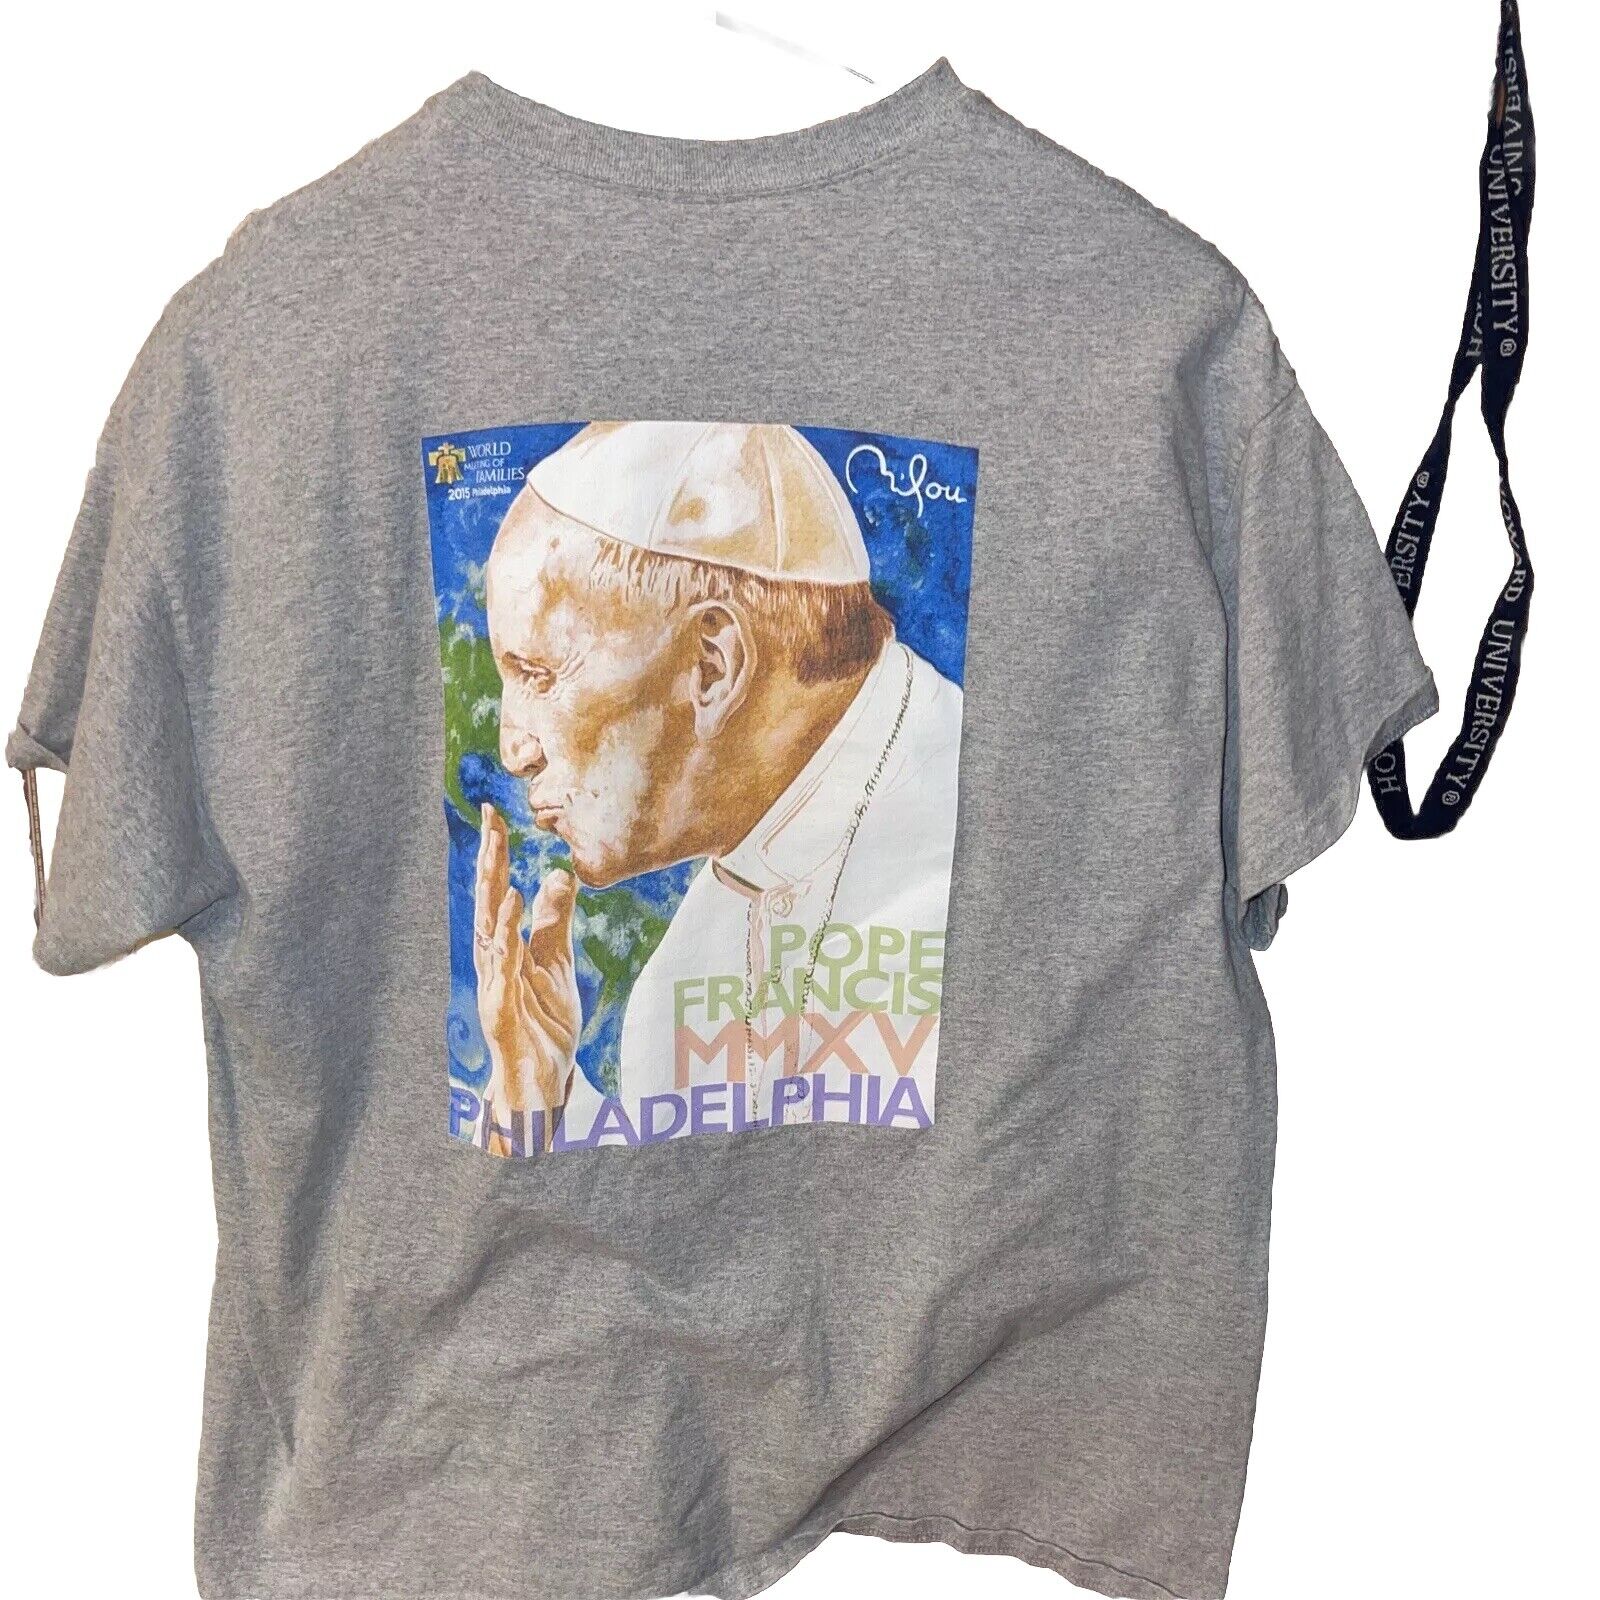 POPE FRANCIS MMXV Philadelphia,Washington Visit Tshirt 2015